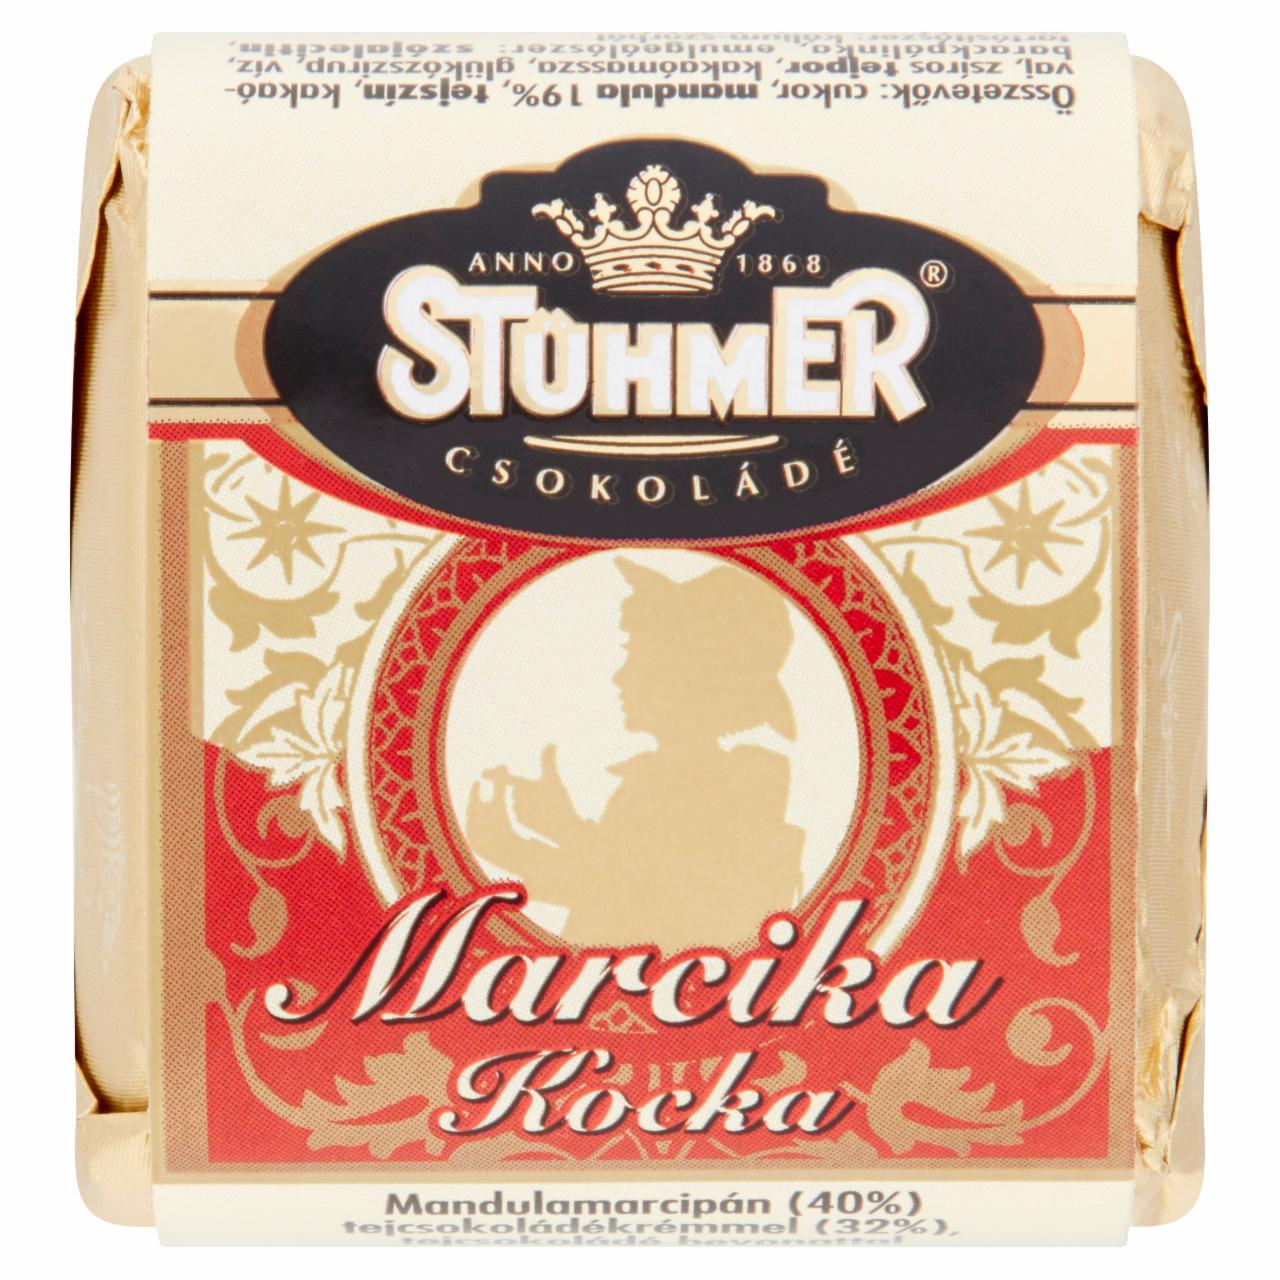 Képek - Stühmer Marcika Kocka mandulamarcipán tejcsokoládékrémmel, tejcsokoládé bevonattal 30 g